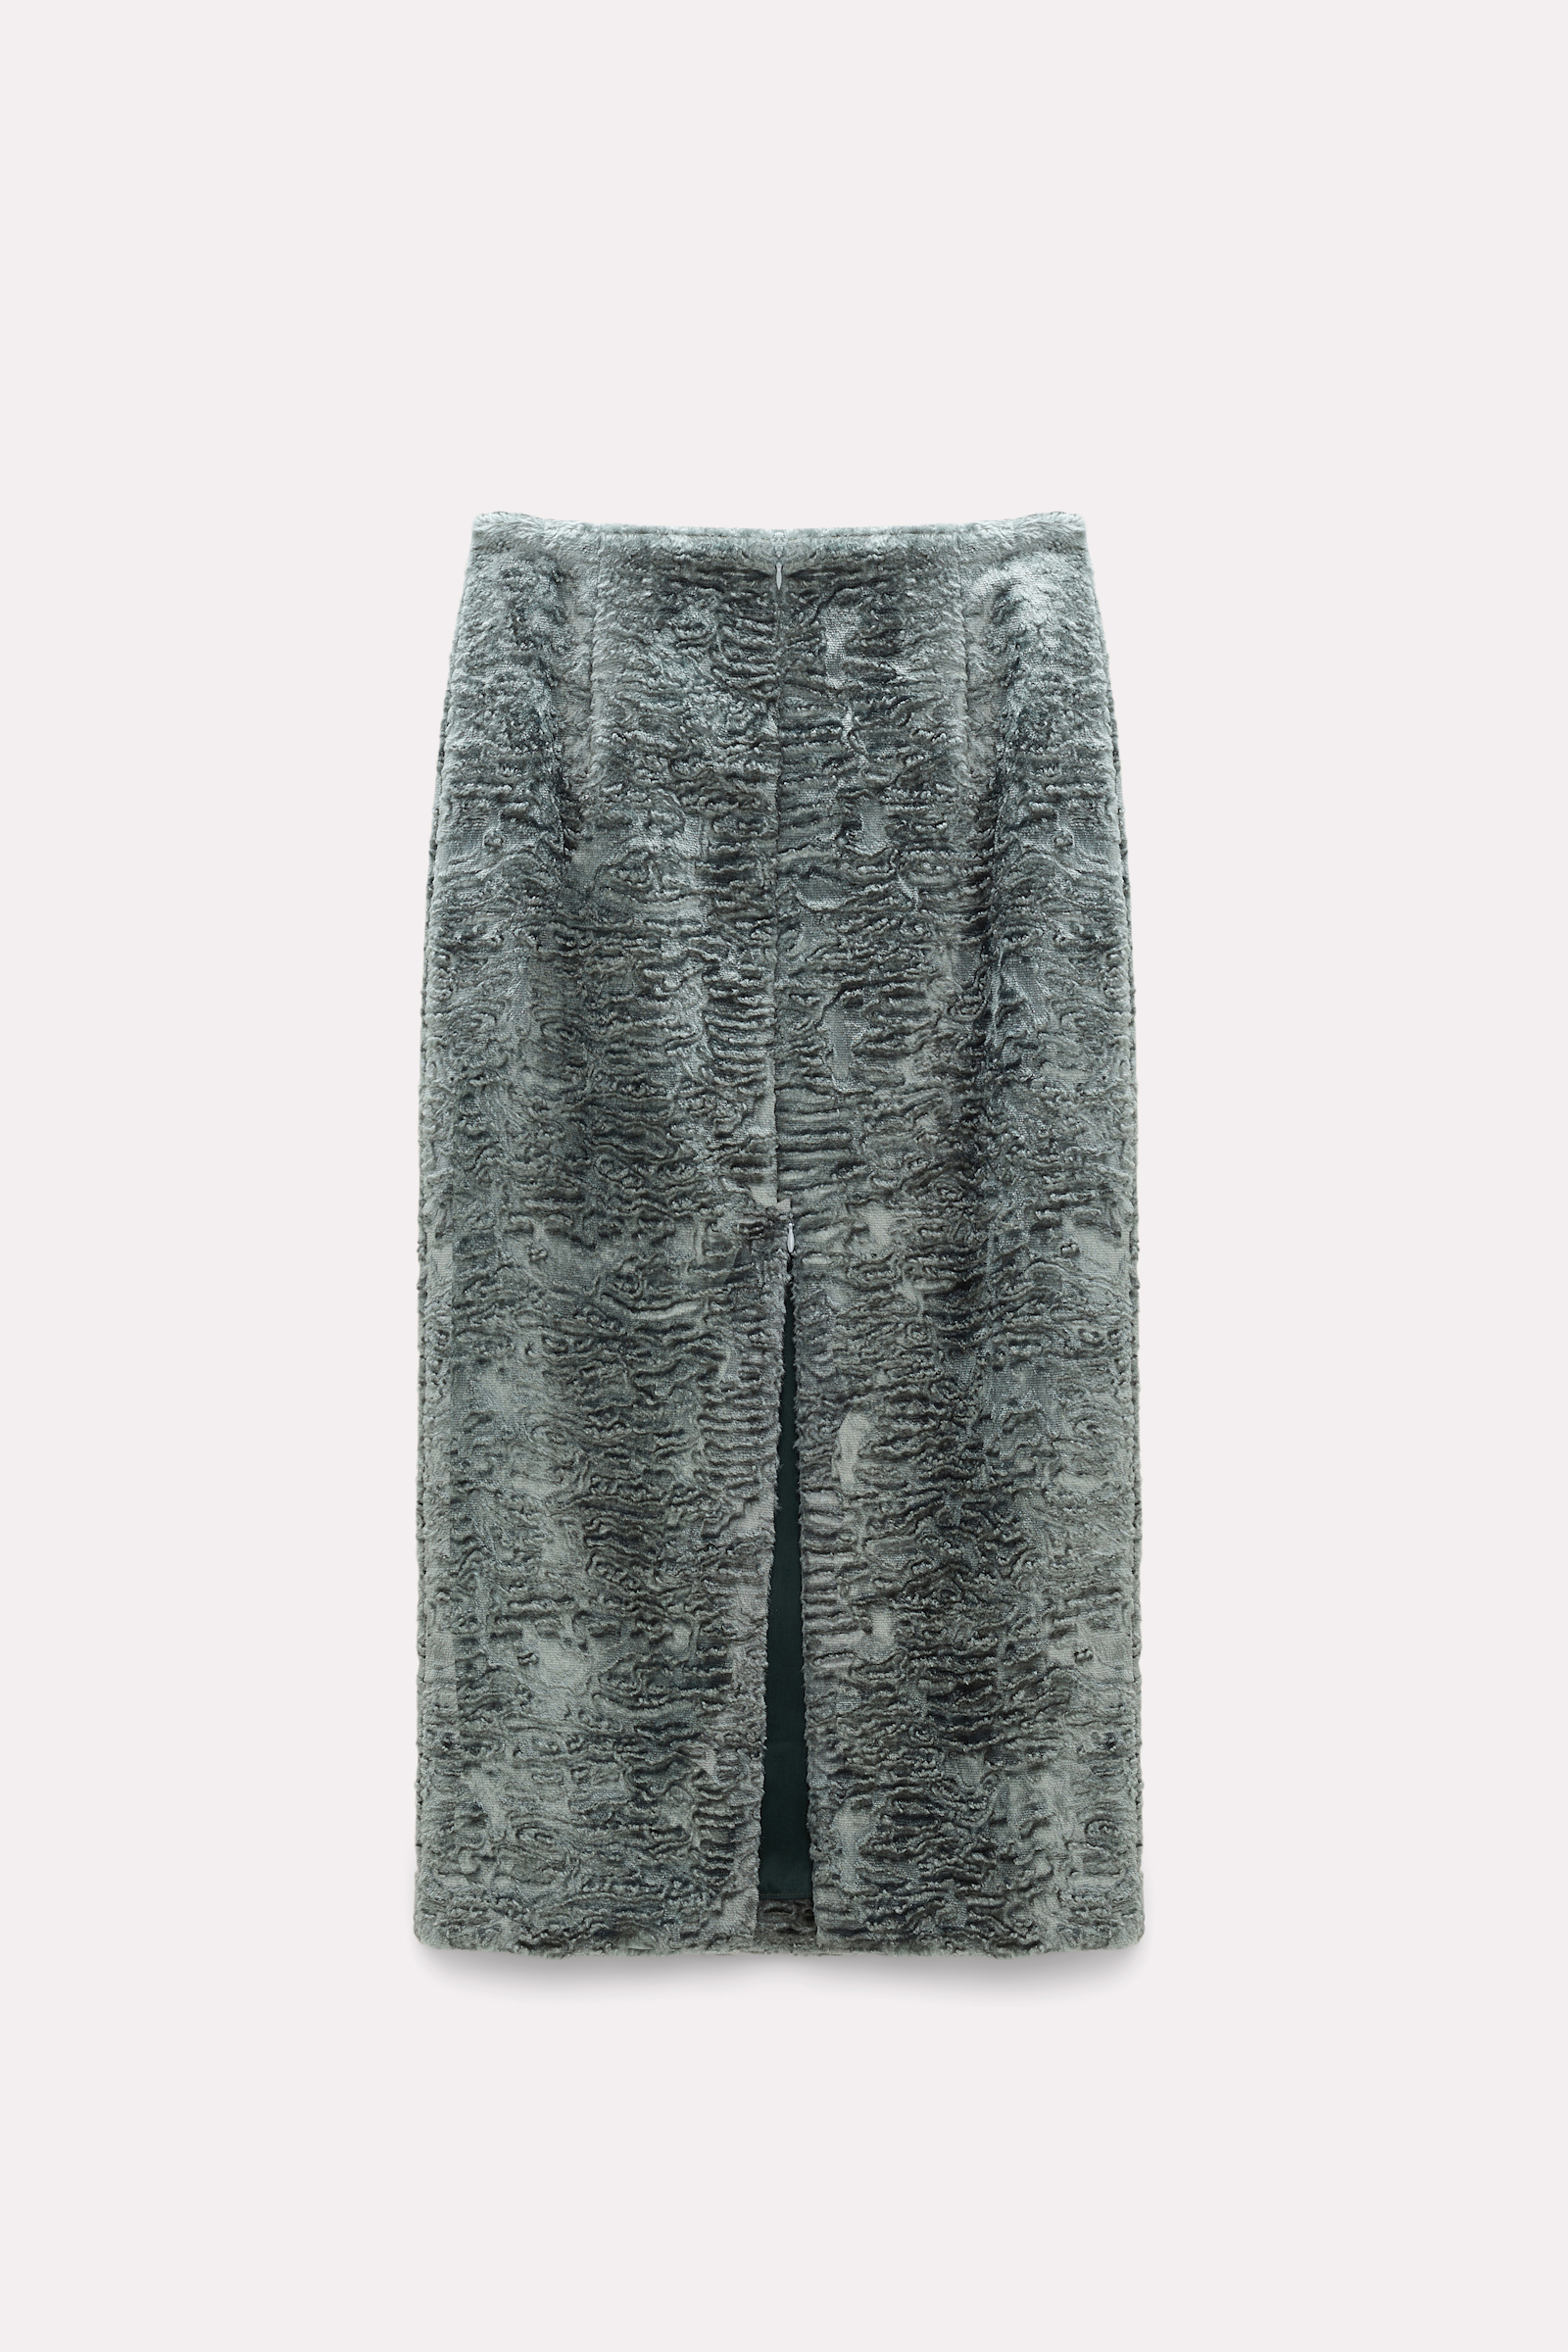 Dorothee Schumacher Embossed velvet pencil skirt shaded mint